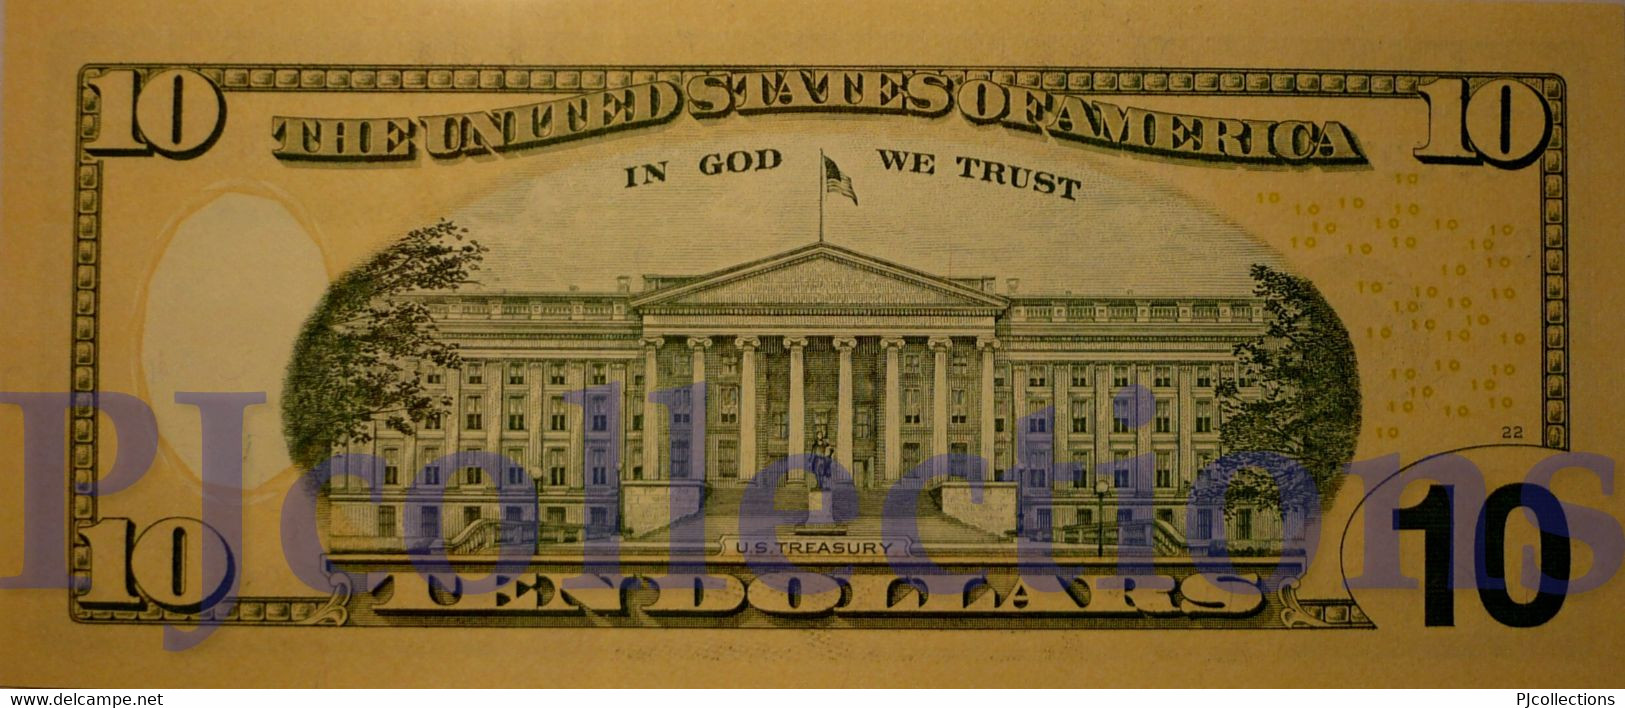 UNITED STATES OF AMERICA 10 DOLLARS 2009 PICK 532 PREFIX "C" UNC - Billetes De La Reserva Federal (1928-...)